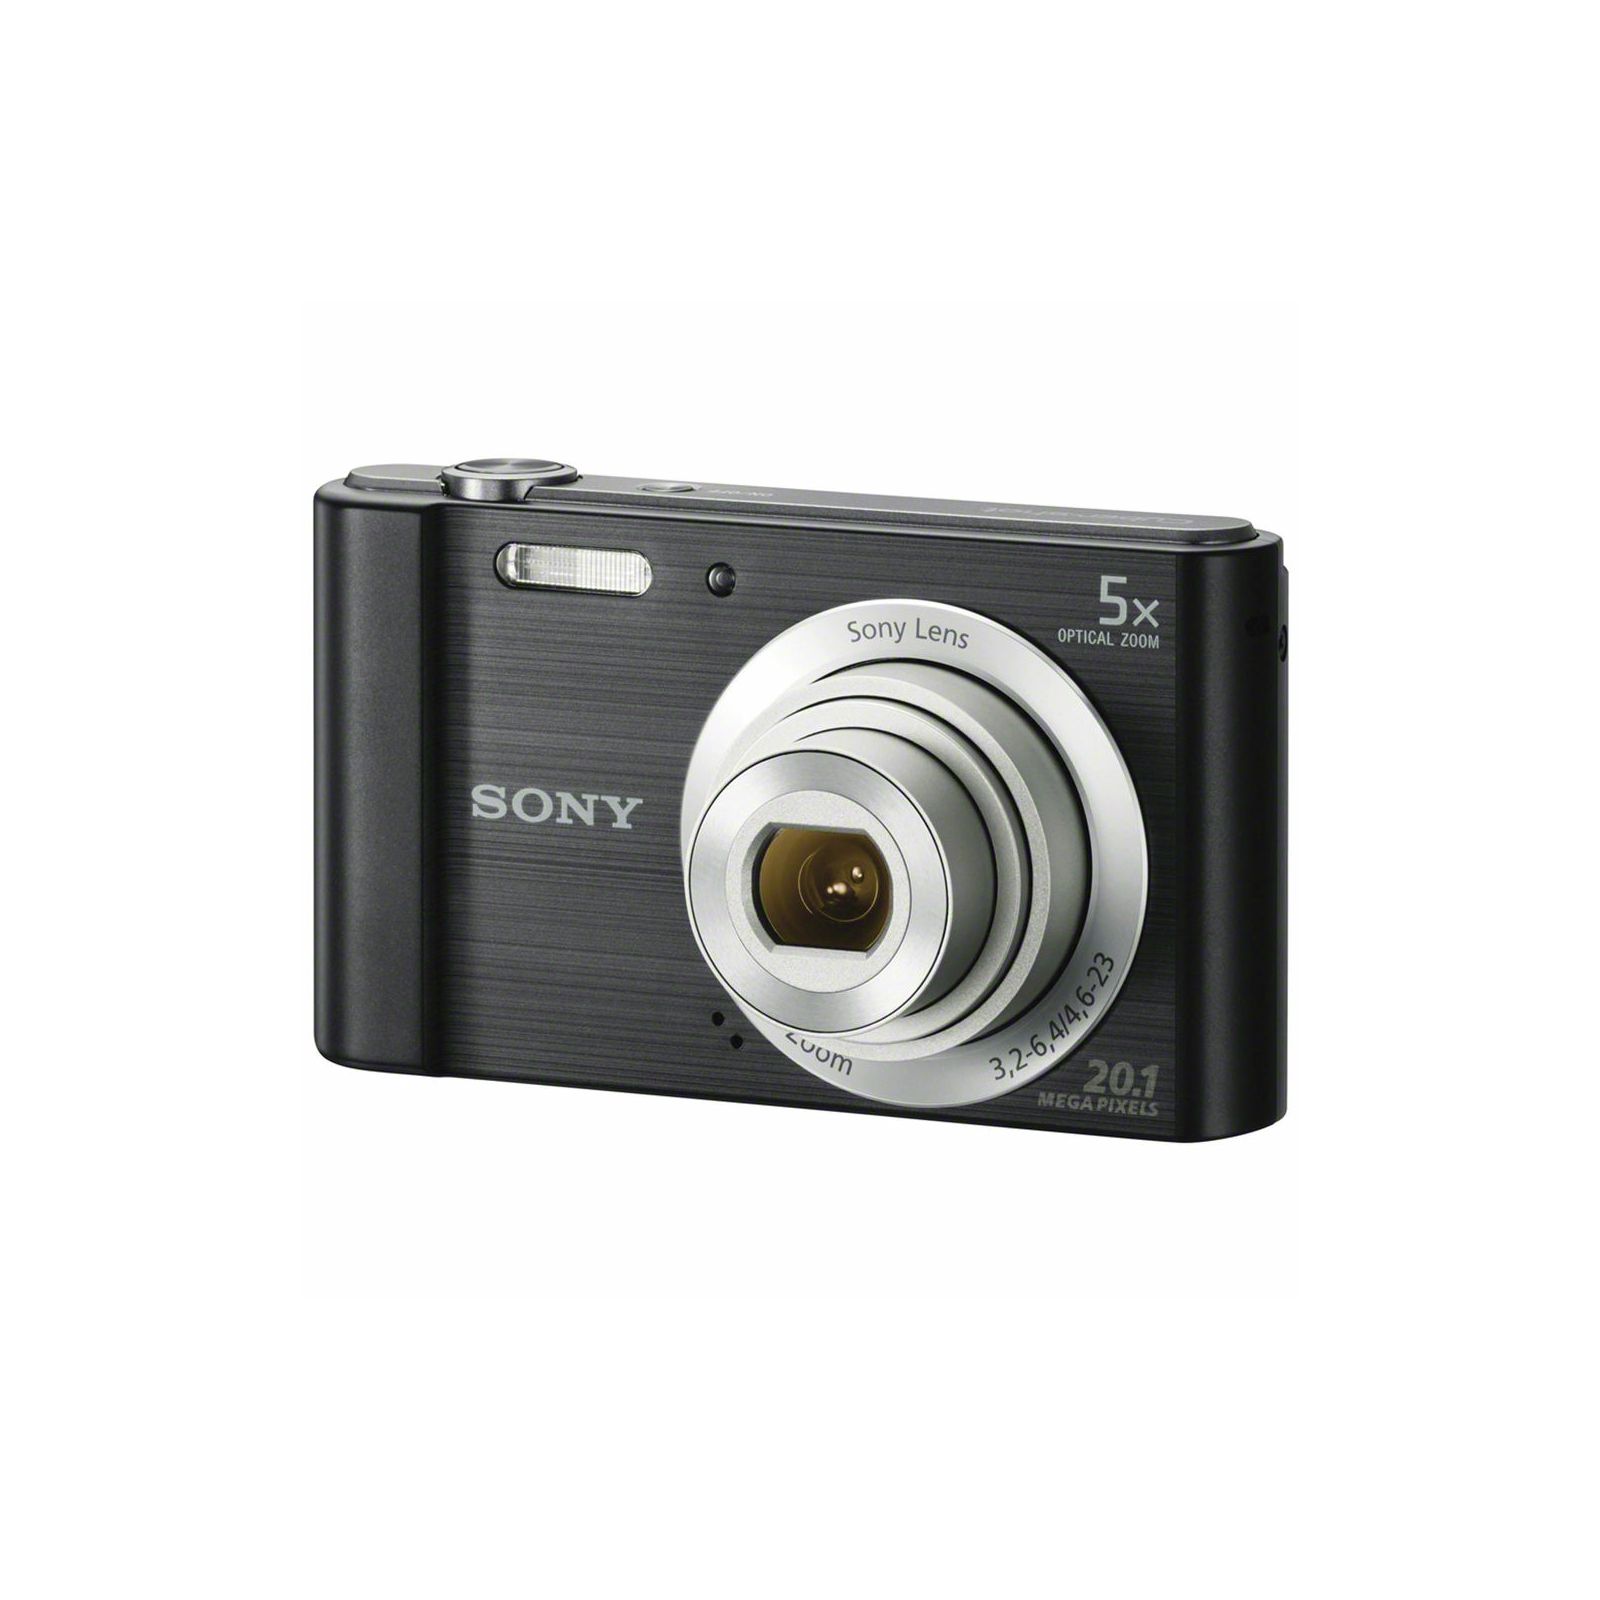 Sony Cyber-shot DSC-W800 Black crni Digitalni fotoaparat Digital Camera DSC-W800B DSCW800B 20.1Mp 5x zoom (DSCW800B.CE3)